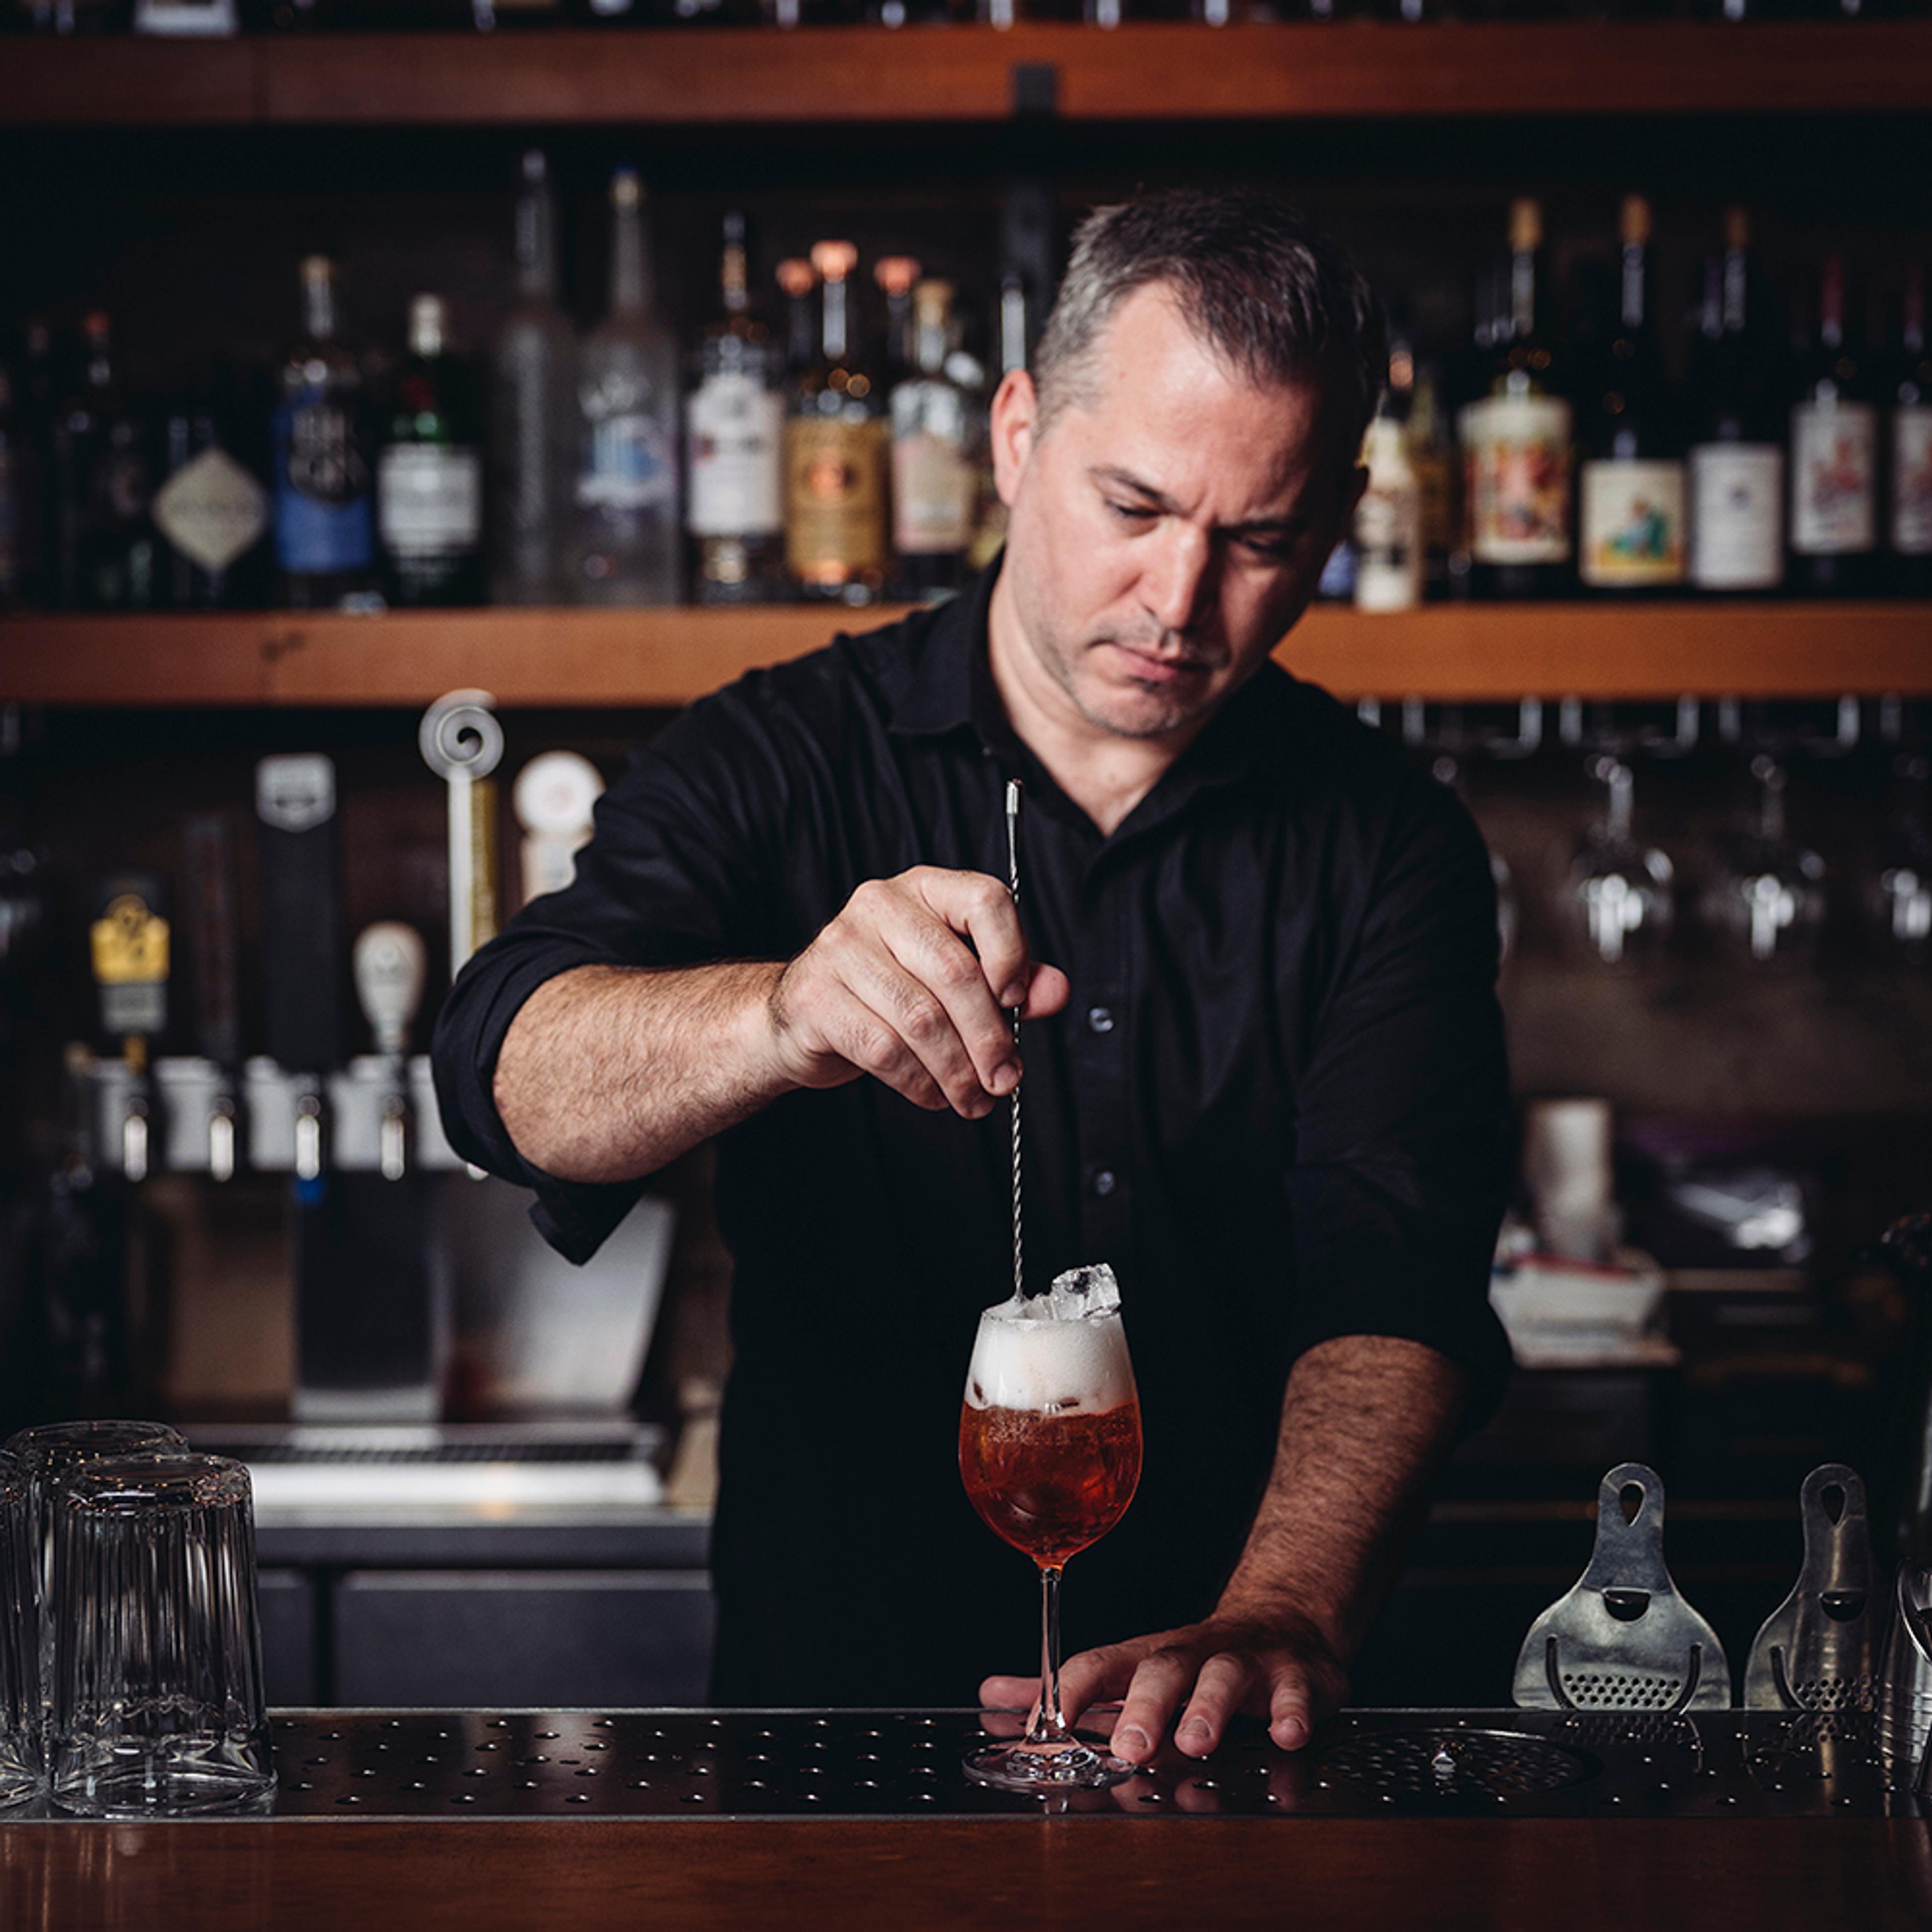 Bartender stirring spritz cocktail in wine glass